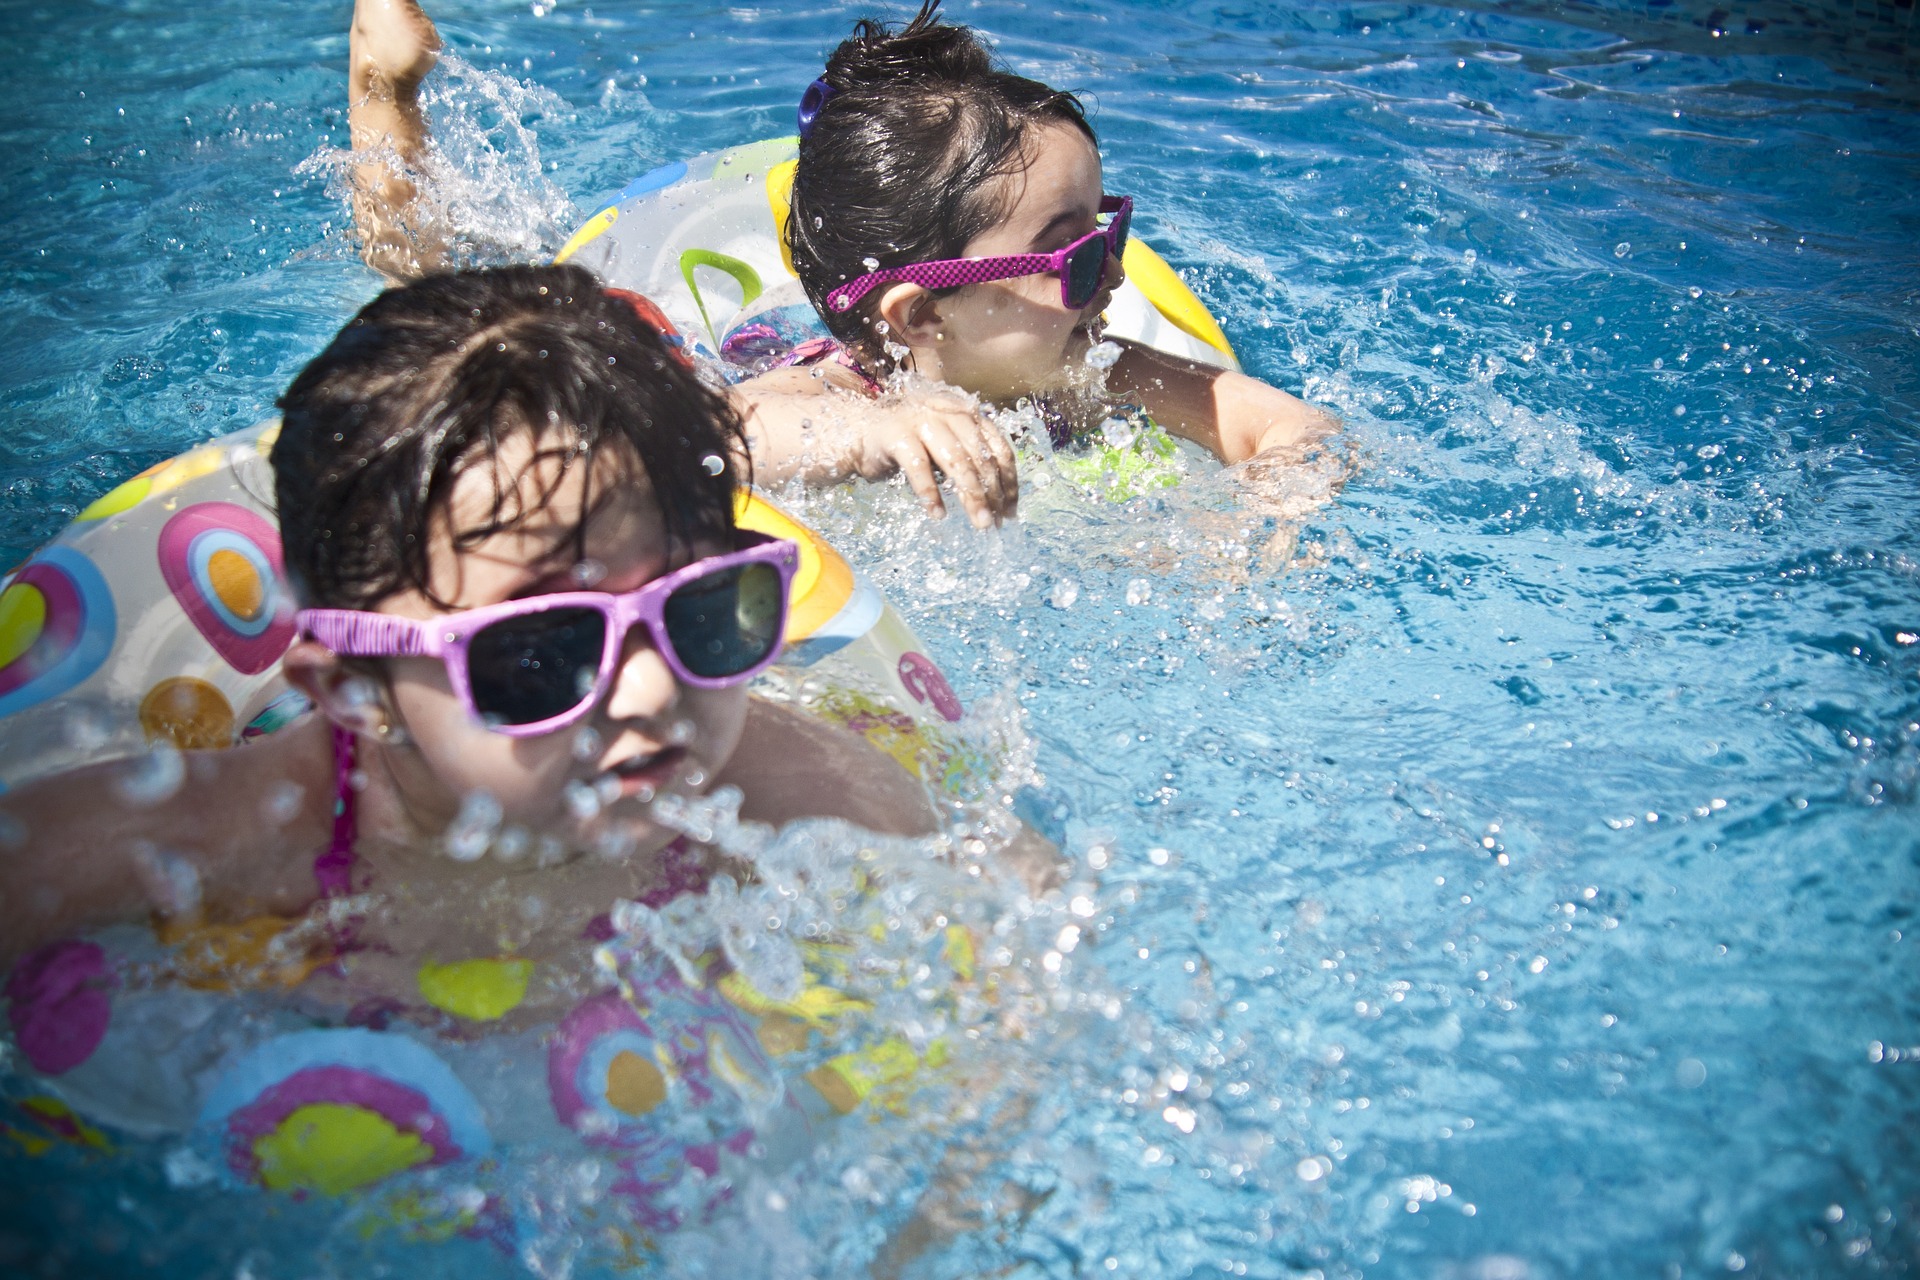 두 명의 어린 아이가 선글라스를 끼고 튜브에 몸을 기대어 수영하고 있다